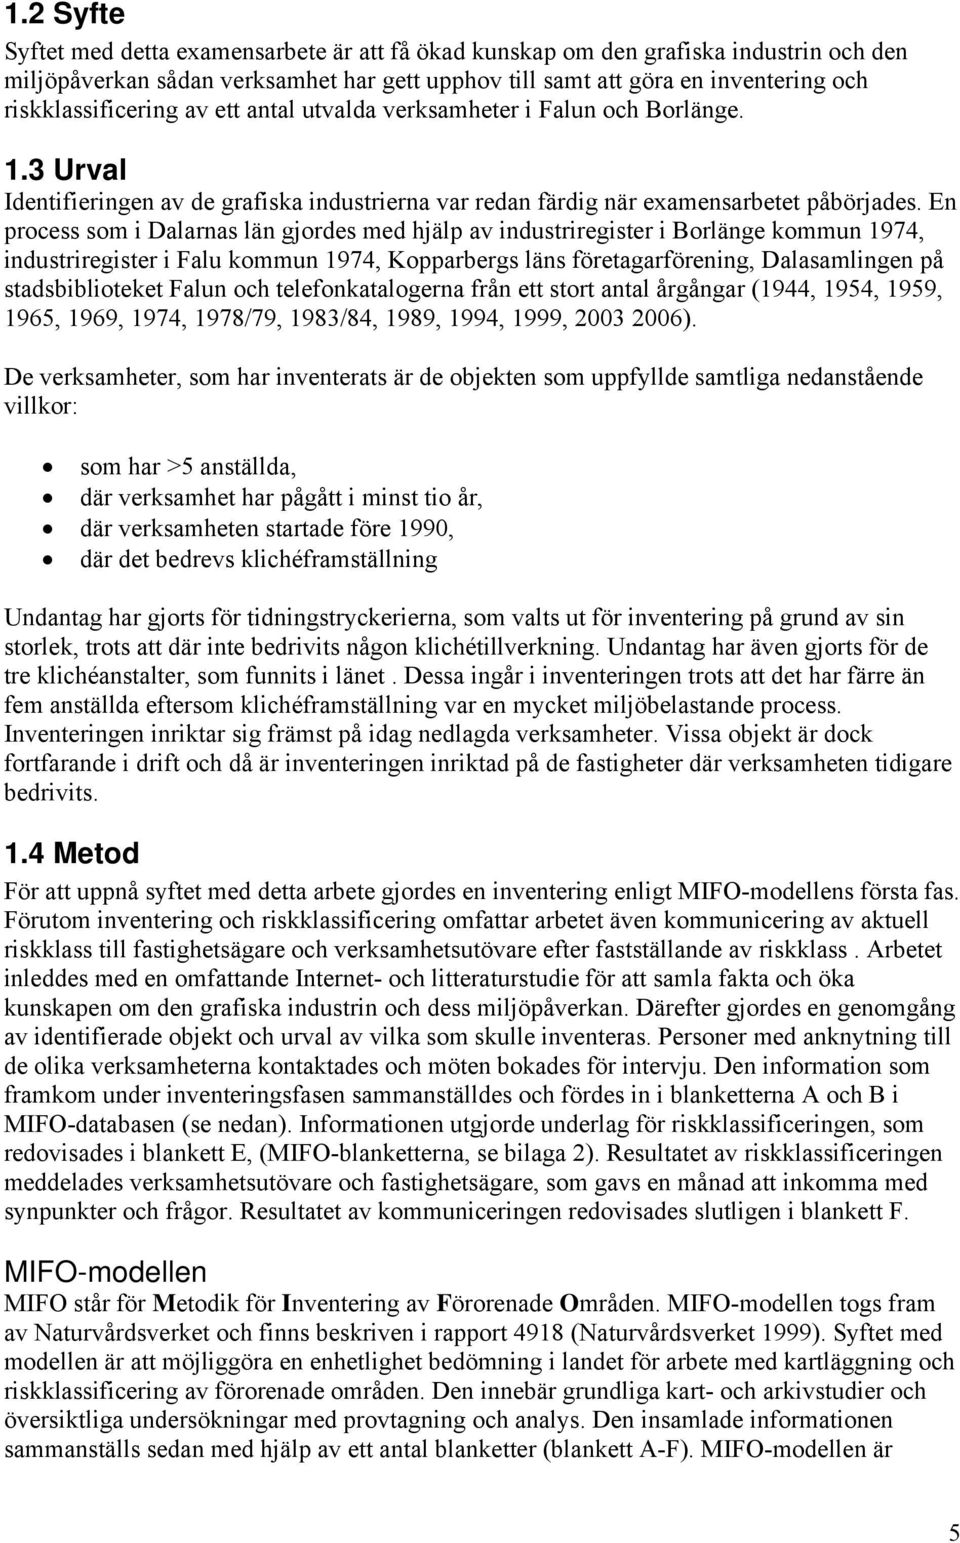 En process som i Dalarnas län gjordes med hjälp av industriregister i Borlänge kommun 1974, industriregister i Falu kommun 1974, Kopparbergs läns företagarförening, Dalasamlingen på stadsbiblioteket